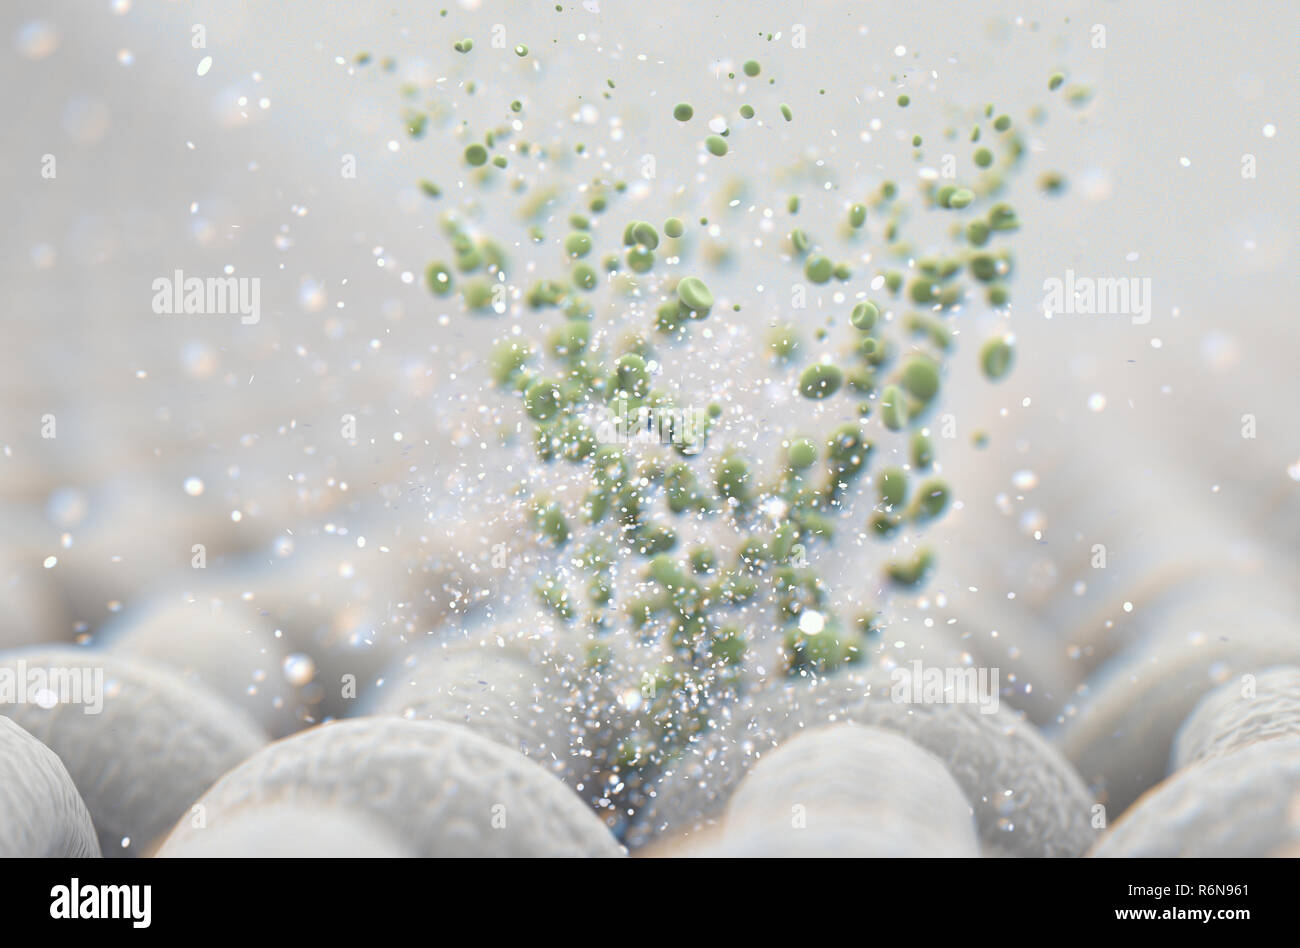 Une vue rapprochée de microscopiques d'une simple et d'un textile tissé vert - Particules visibles de rendu 3D Banque D'Images